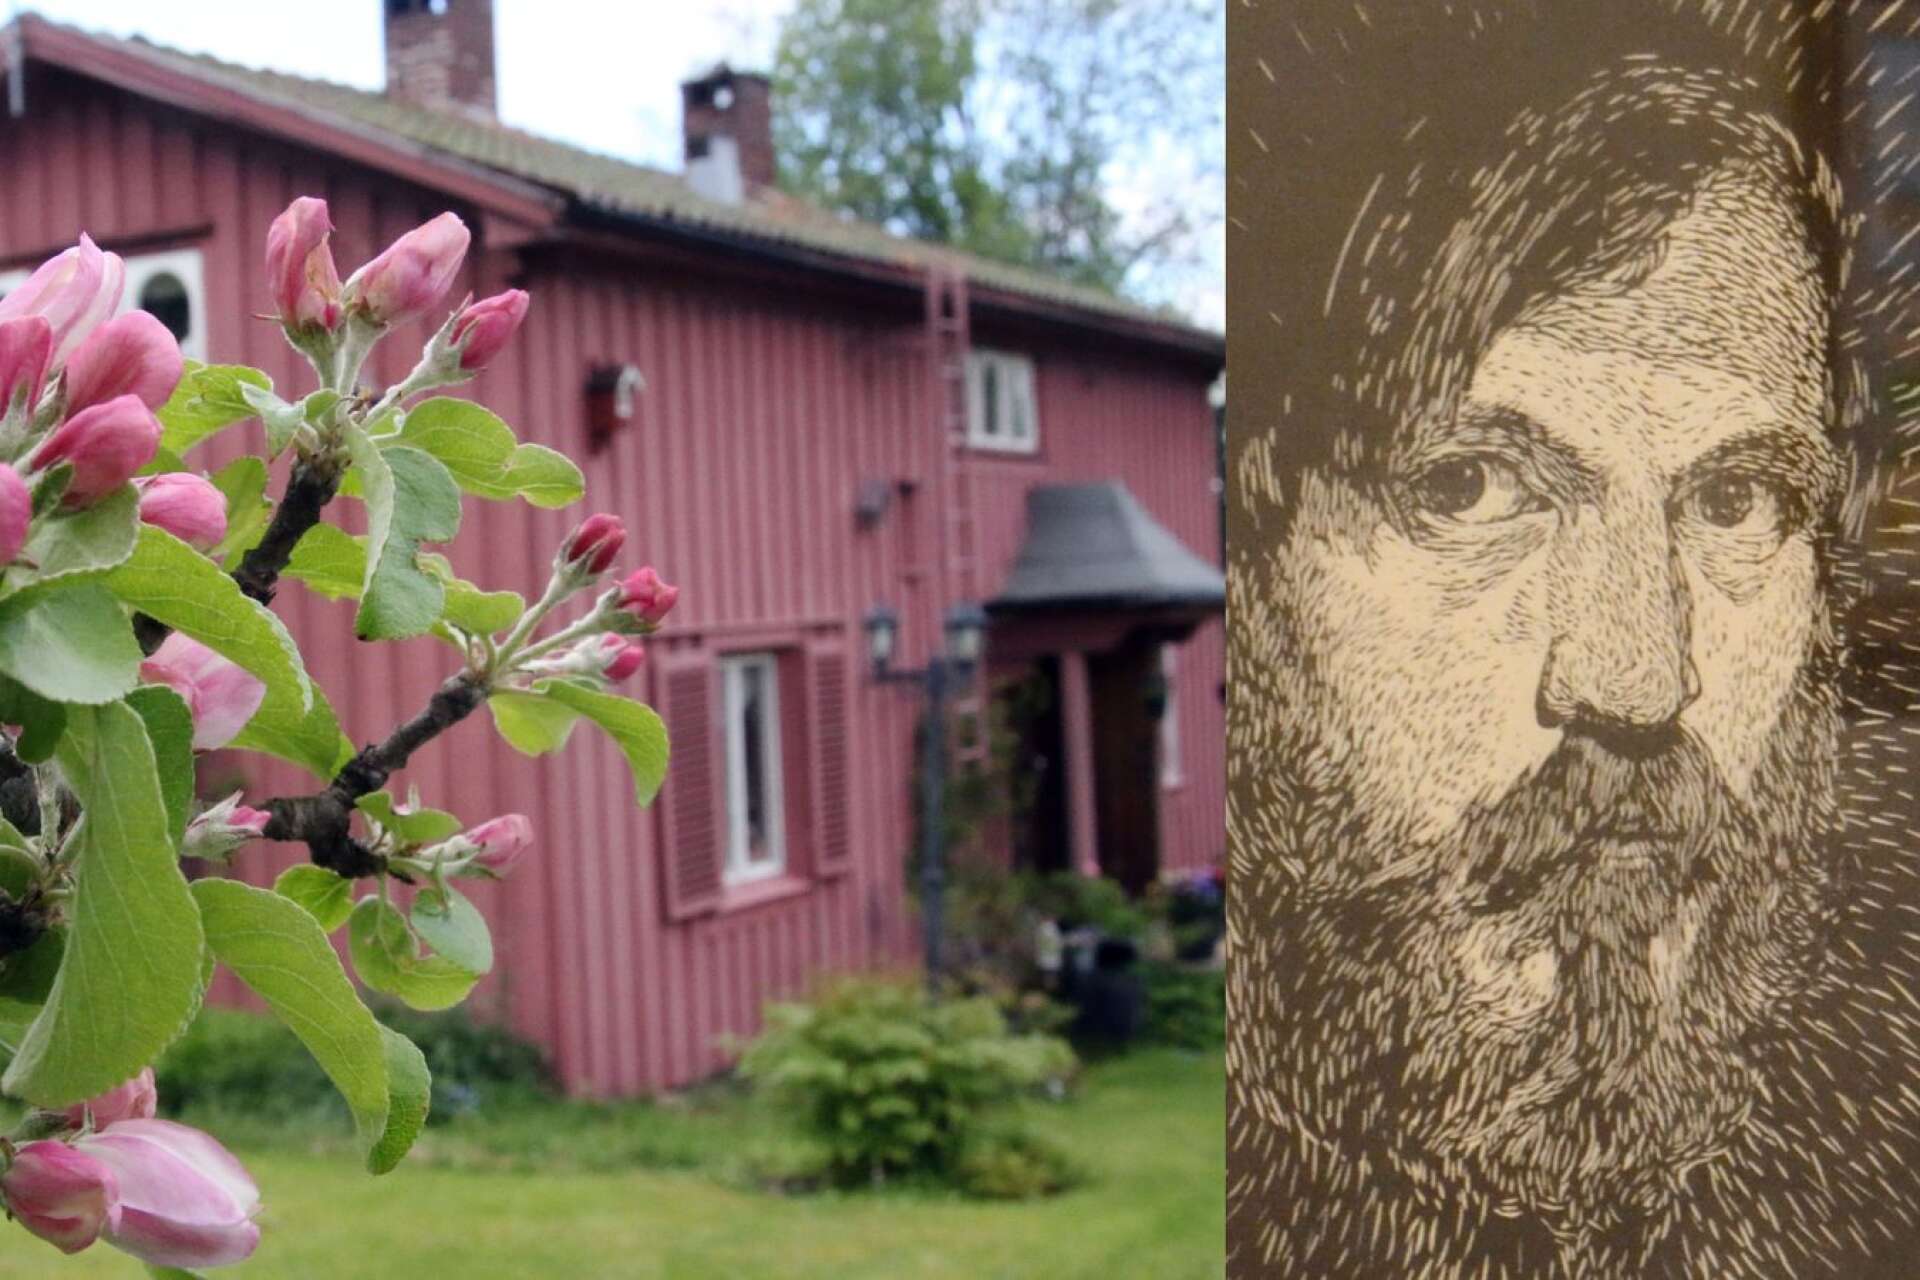 Konstnären Thor Fagerkvist (1884-1960) bodde i många år på gården Godmansro i Dammhyttan, öster om Filipstad. Idag är den privatbostad och bebos av en annan konstnär. Träsnittet är ett självporträtt av Fagerkvist.